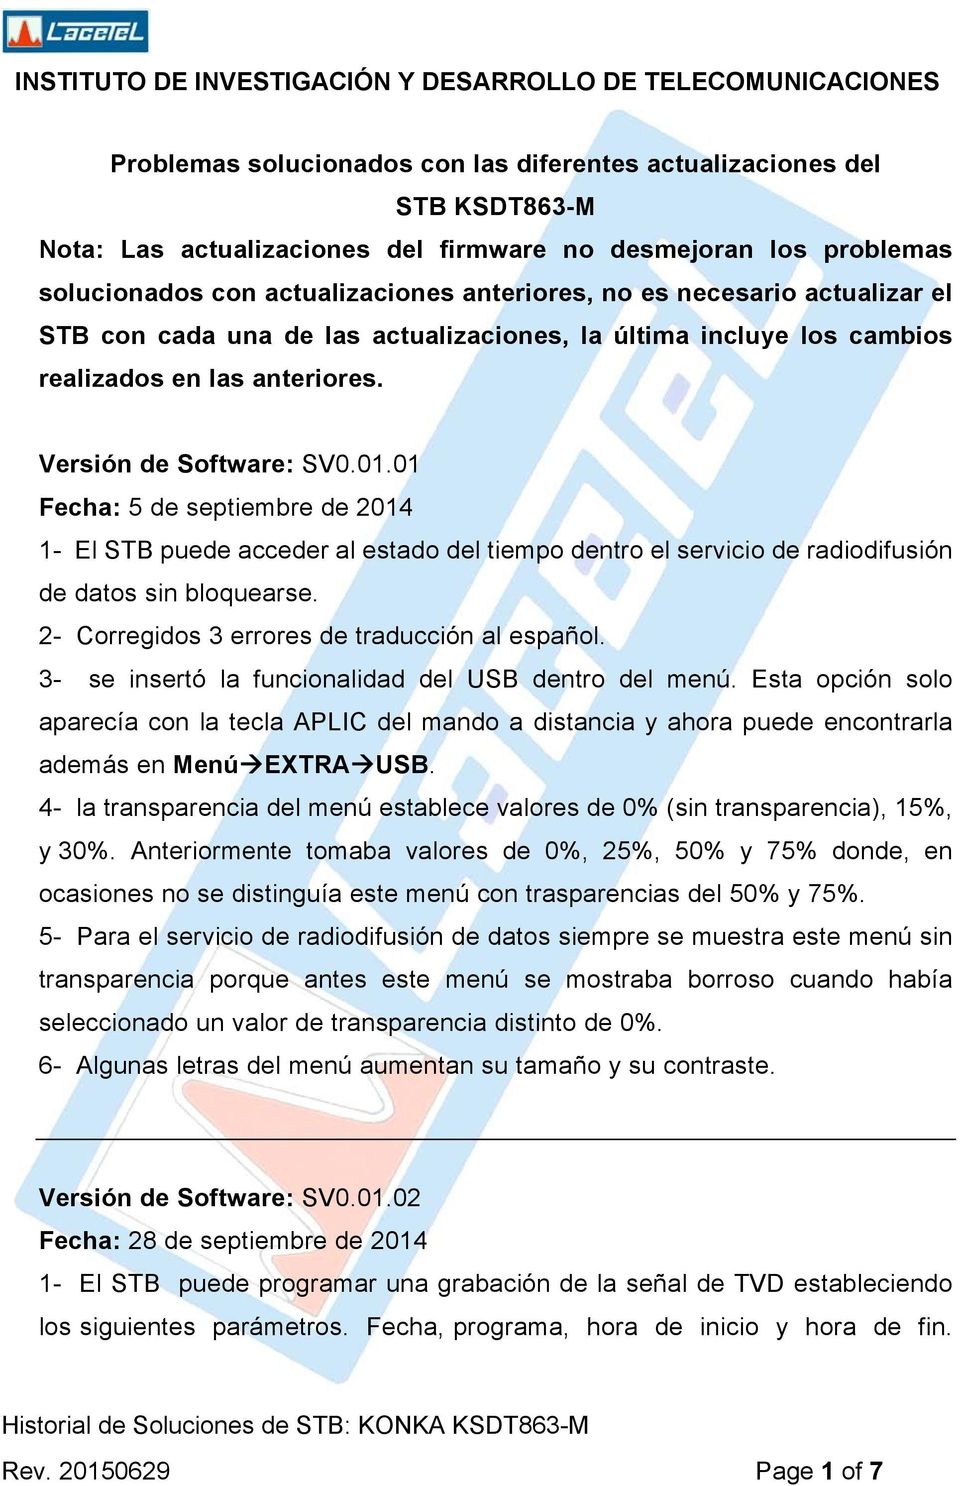 01 Fecha: 5 de septiembre de 2014 1- El STB puede acceder al estado del tiempo dentro el servicio de radiodifusión de datos sin bloquearse. 2- Corregidos 3 errores de traducción al español.